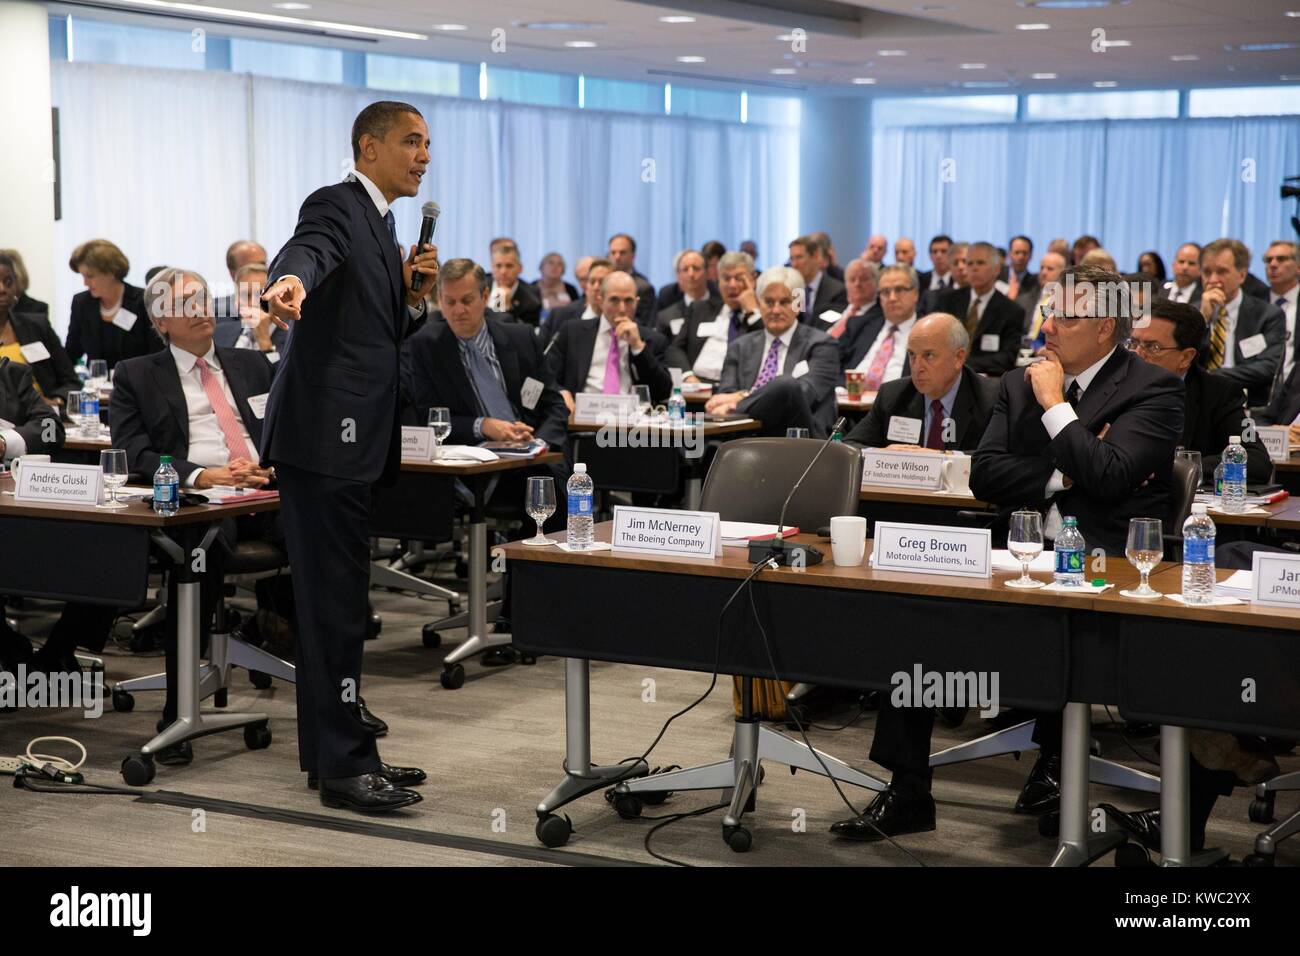 Il presidente Barack Obama prende domande alla riunione trimestrale della tavola rotonda aziendale. Il gruppo è principalmente uomini bianchi, con solo un paio di donne o Americani africani partecipanti. Washington, D.C., dicembre 5, 2012. (BSLOC 2015 13 155) Foto Stock